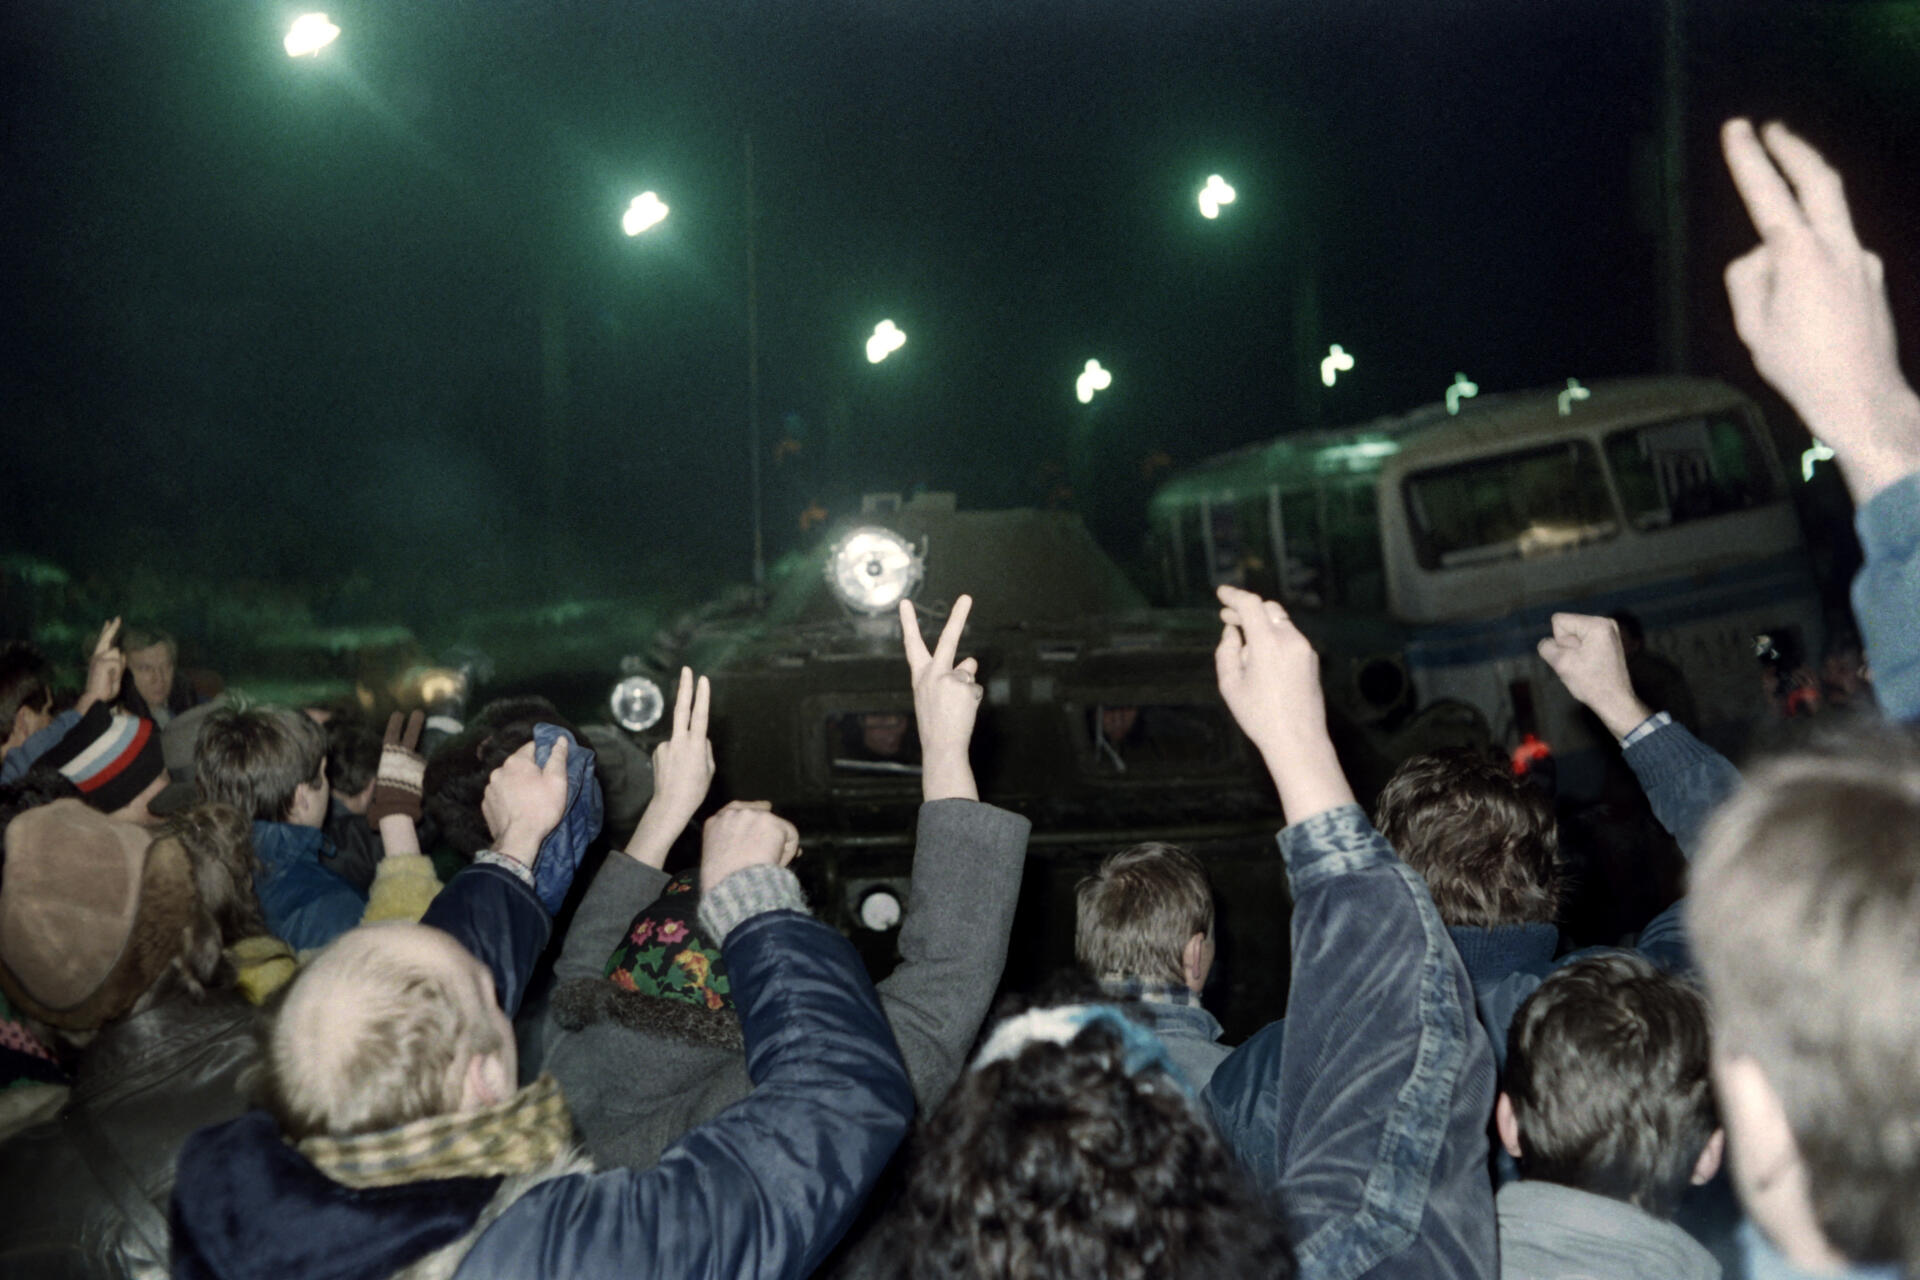 Un groupe de manifestants lituaniens faisant le signe V se tient devant un char de l’Armée rouge soviétique pendant l’assaut de la station de radio et de télévision lituanienne, le 13 janvier 1991 à Vilnius.